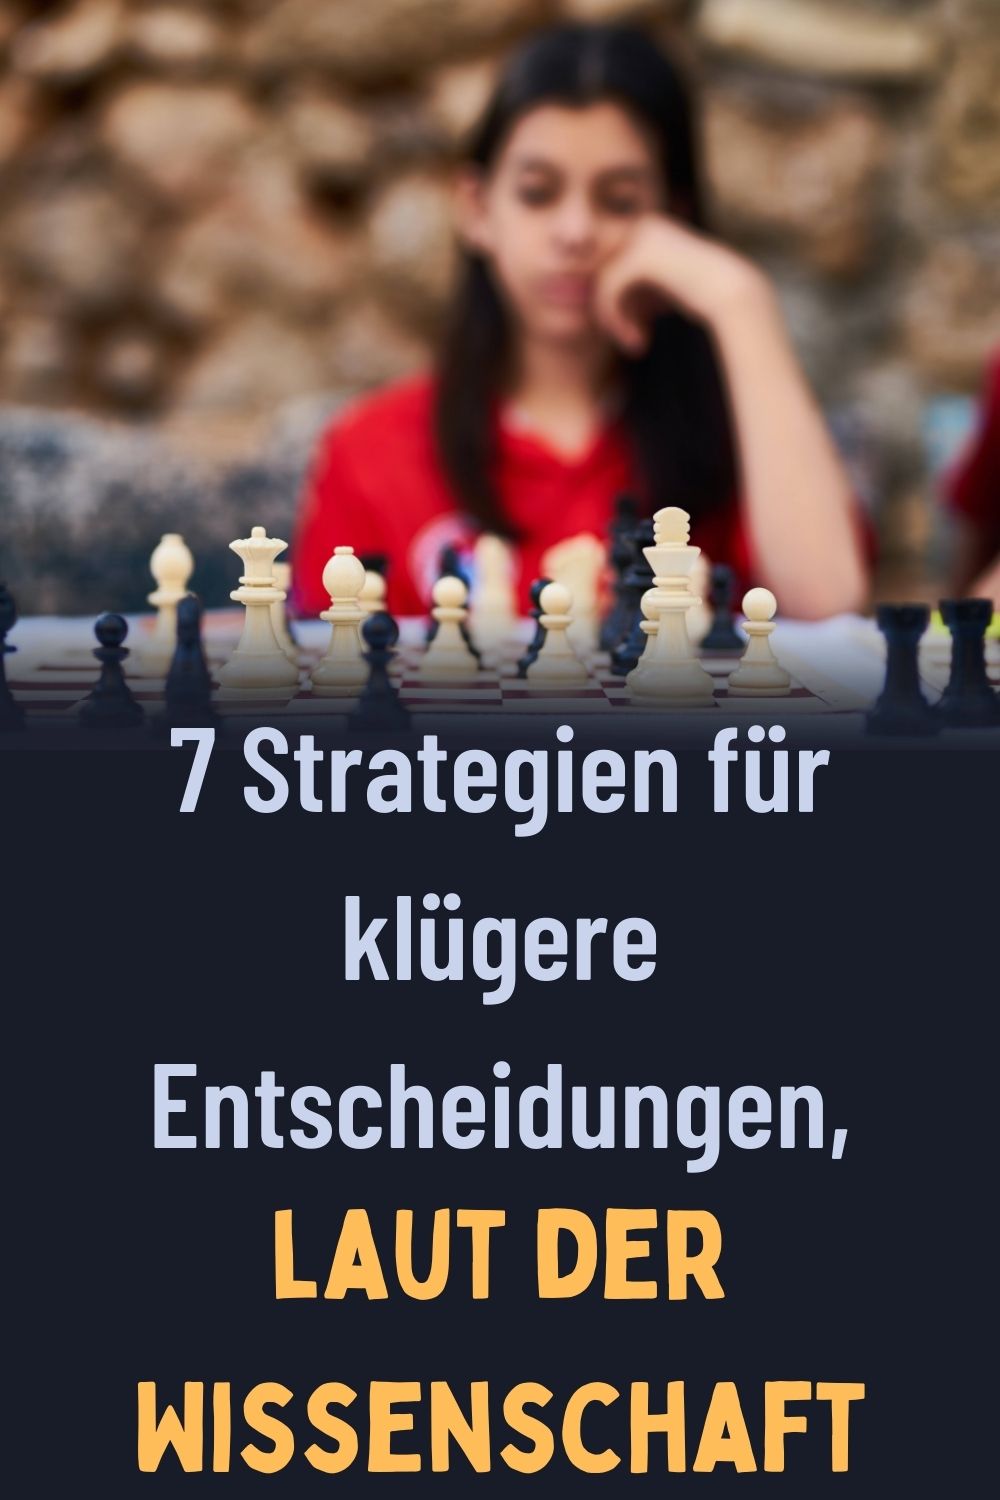 7-Strategien-fuer-kluegere-Entscheidungen-laut-der-Wissenschaft